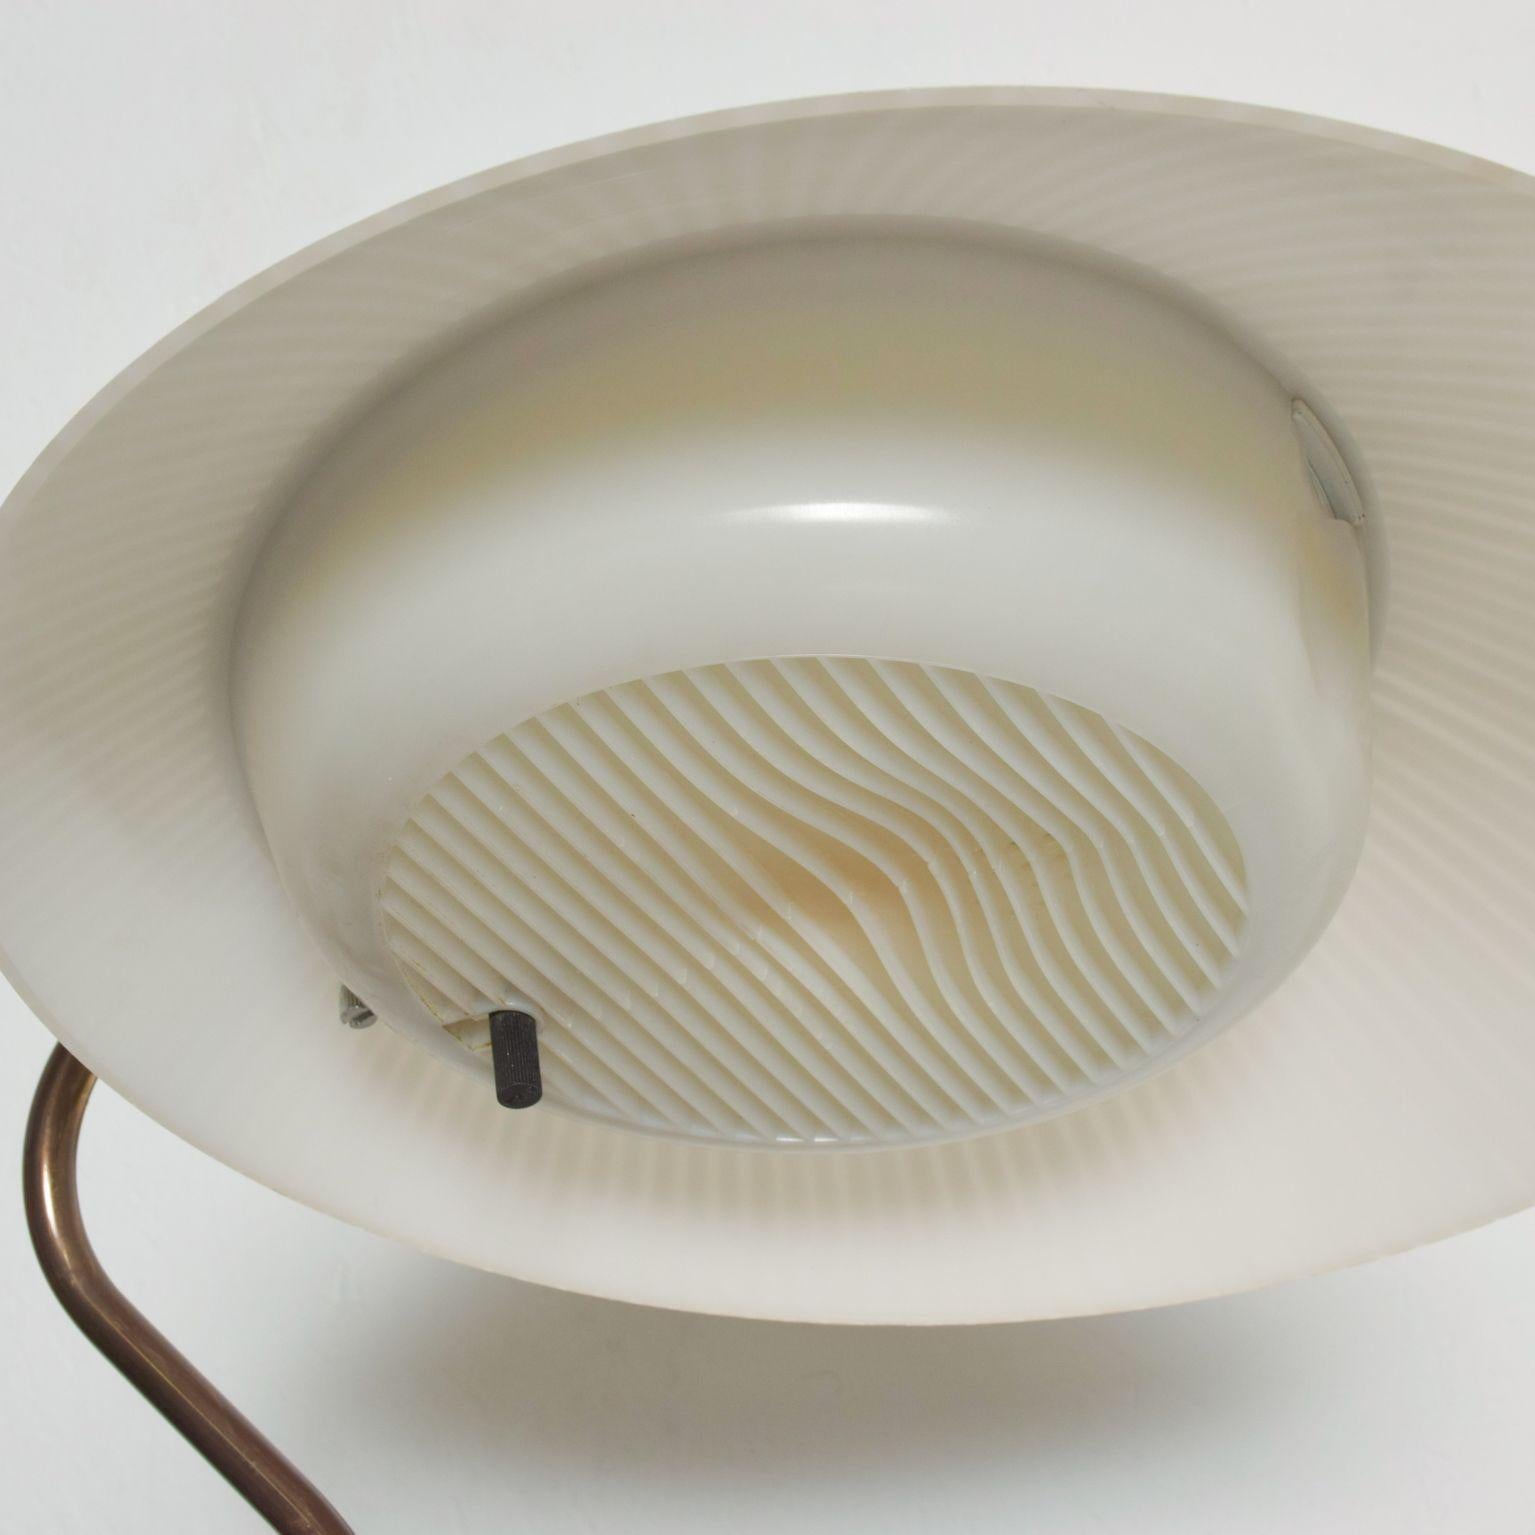 Modern Midcentury Clamshell Table Desk Lamp by Gerald Thurston for Lightolier 1